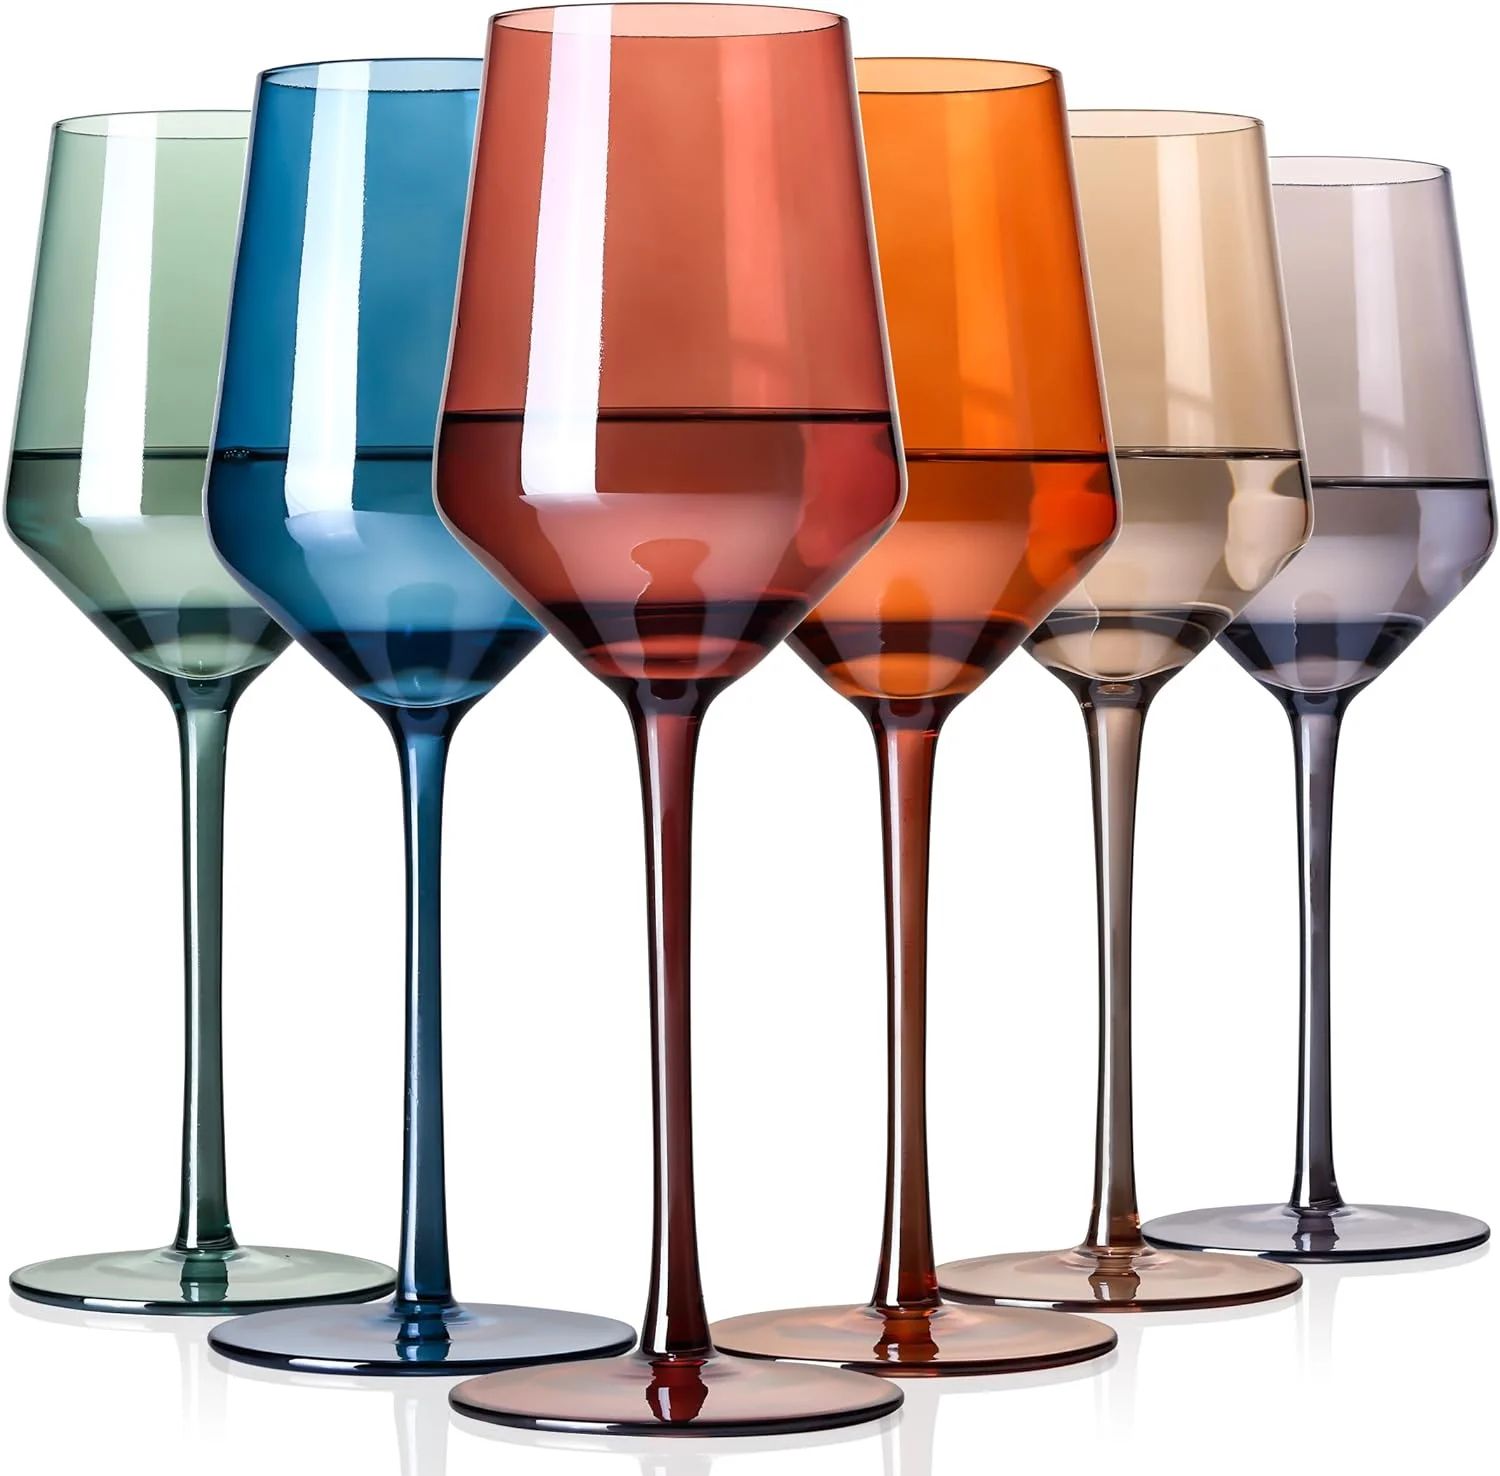 PANGU Colored Wine Glasses Set Of 6 - Crystal Colored Wine Glasses With Long Stem,Wine Glasses wi... | Walmart (US)